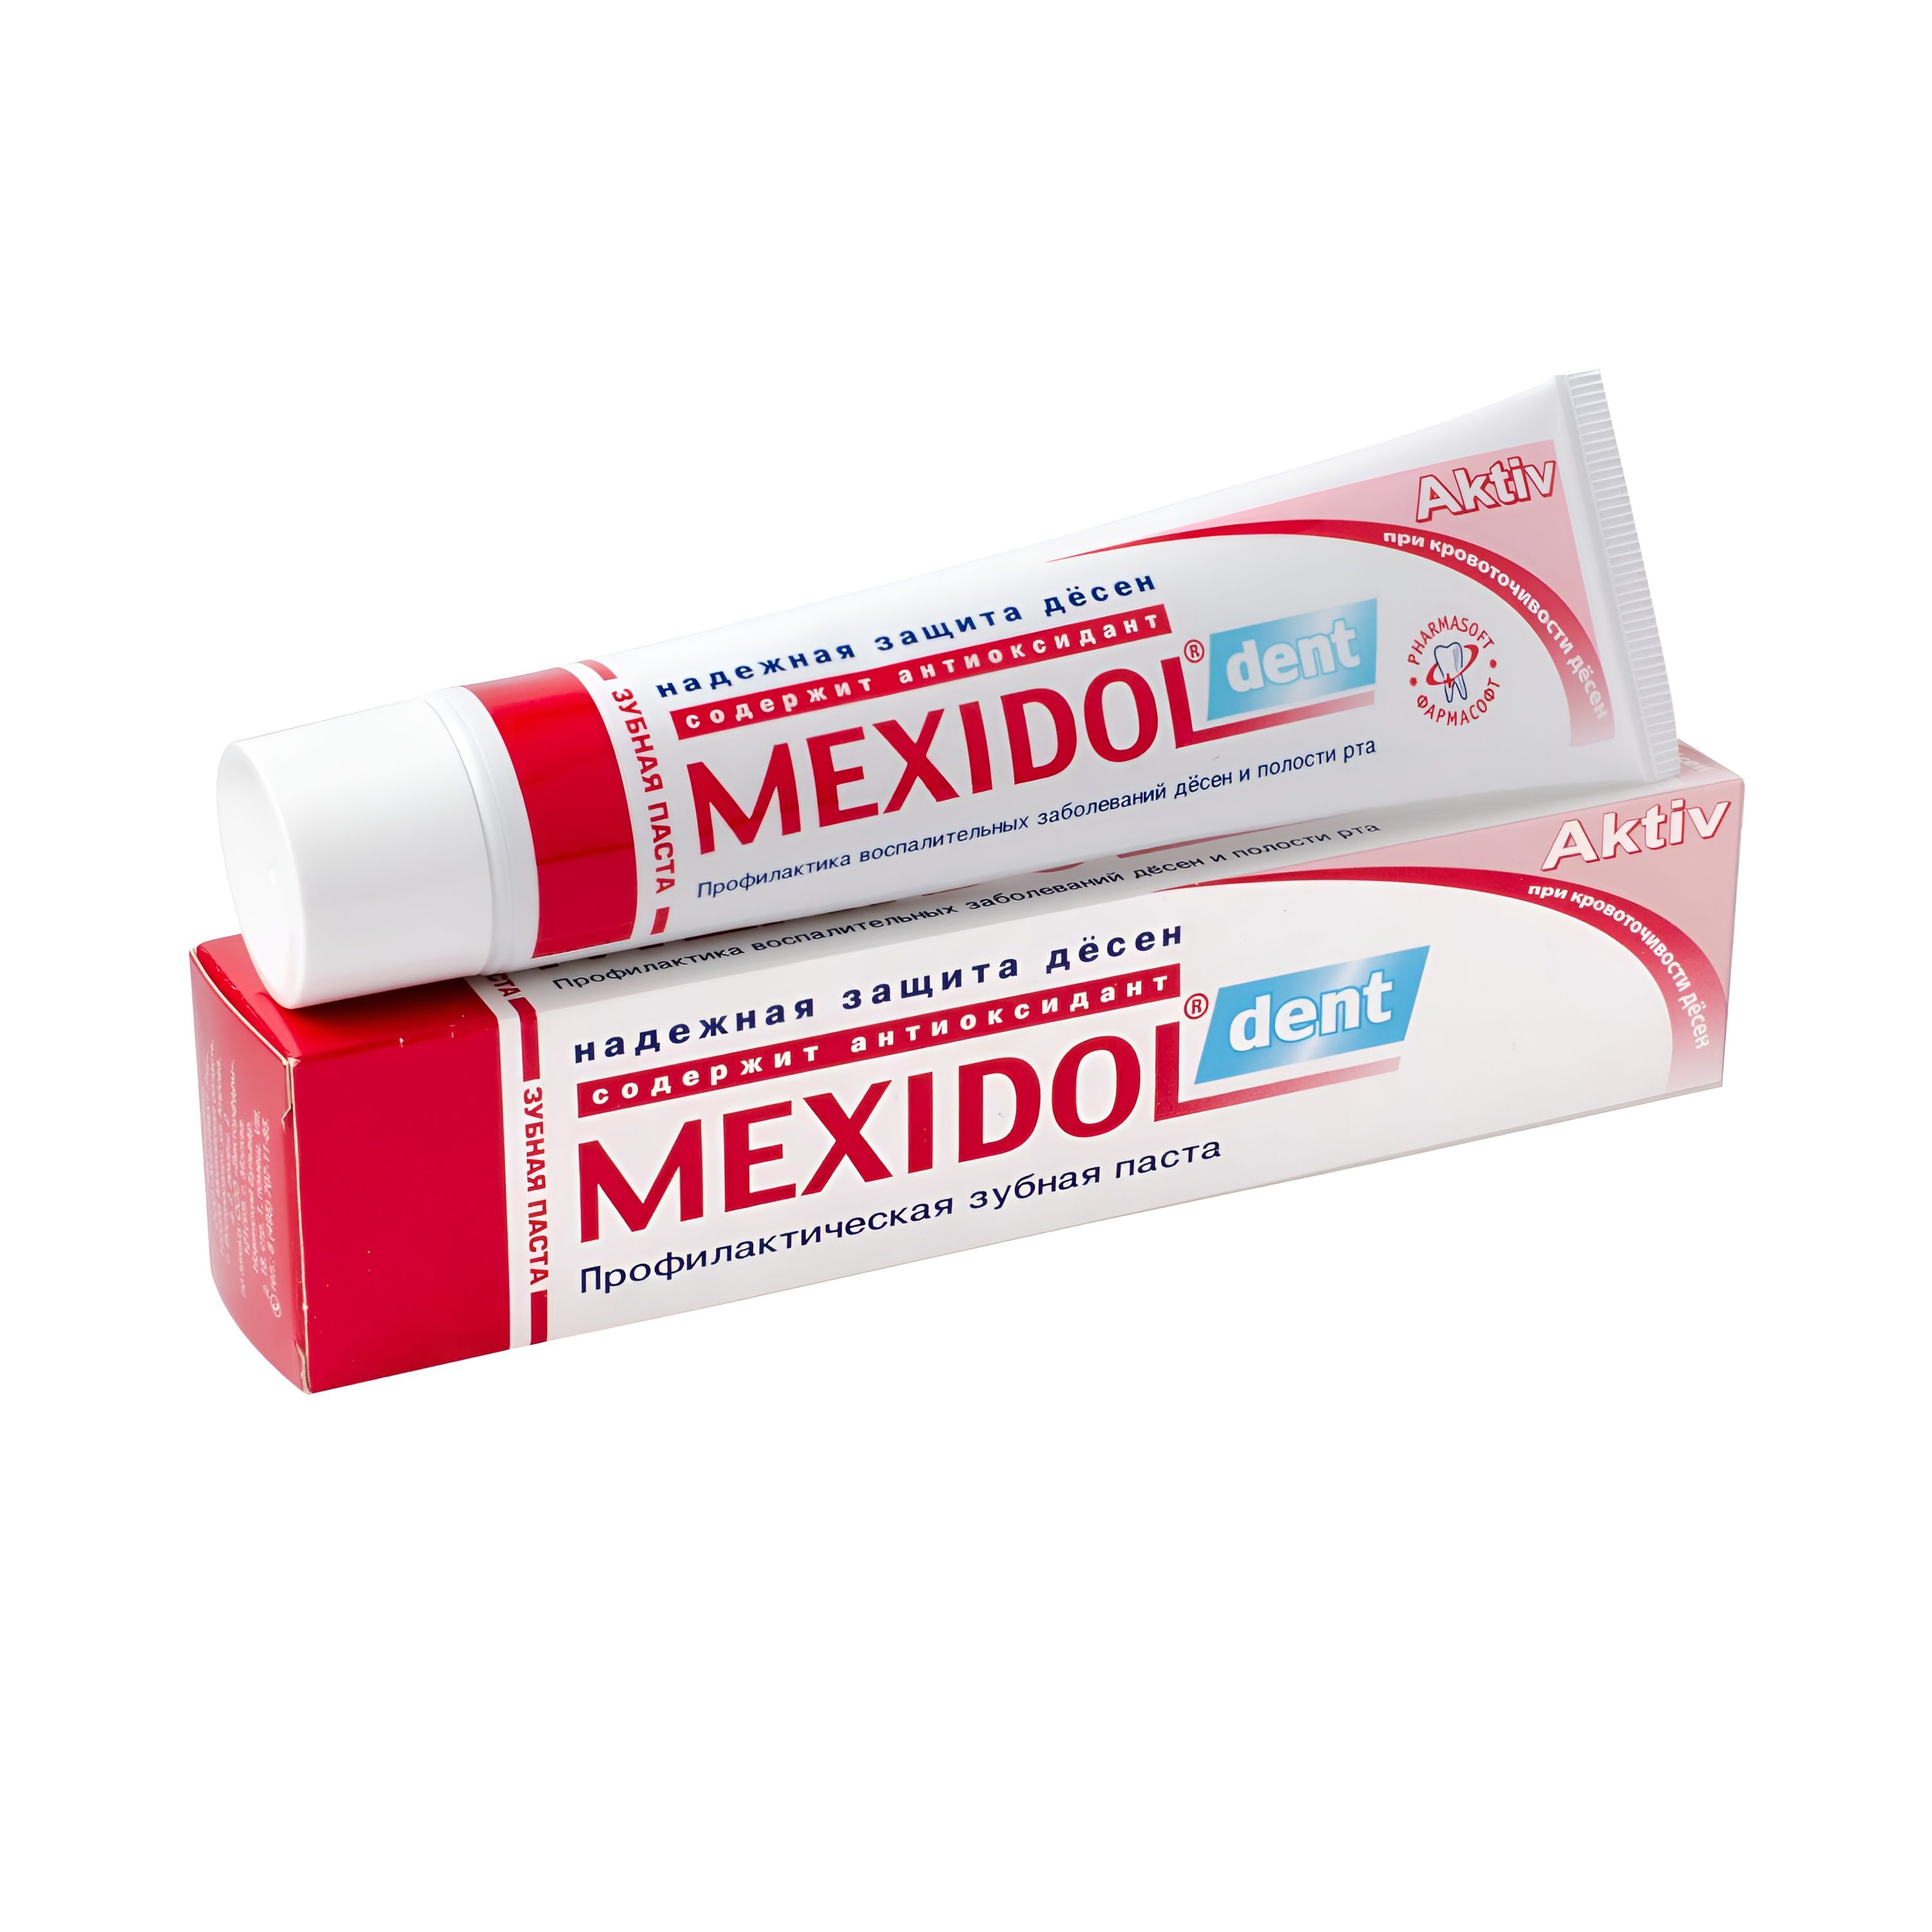 Мексидол Дент Актив, зубная паста, 65 г зубная паста mexidol dent activ 65 г